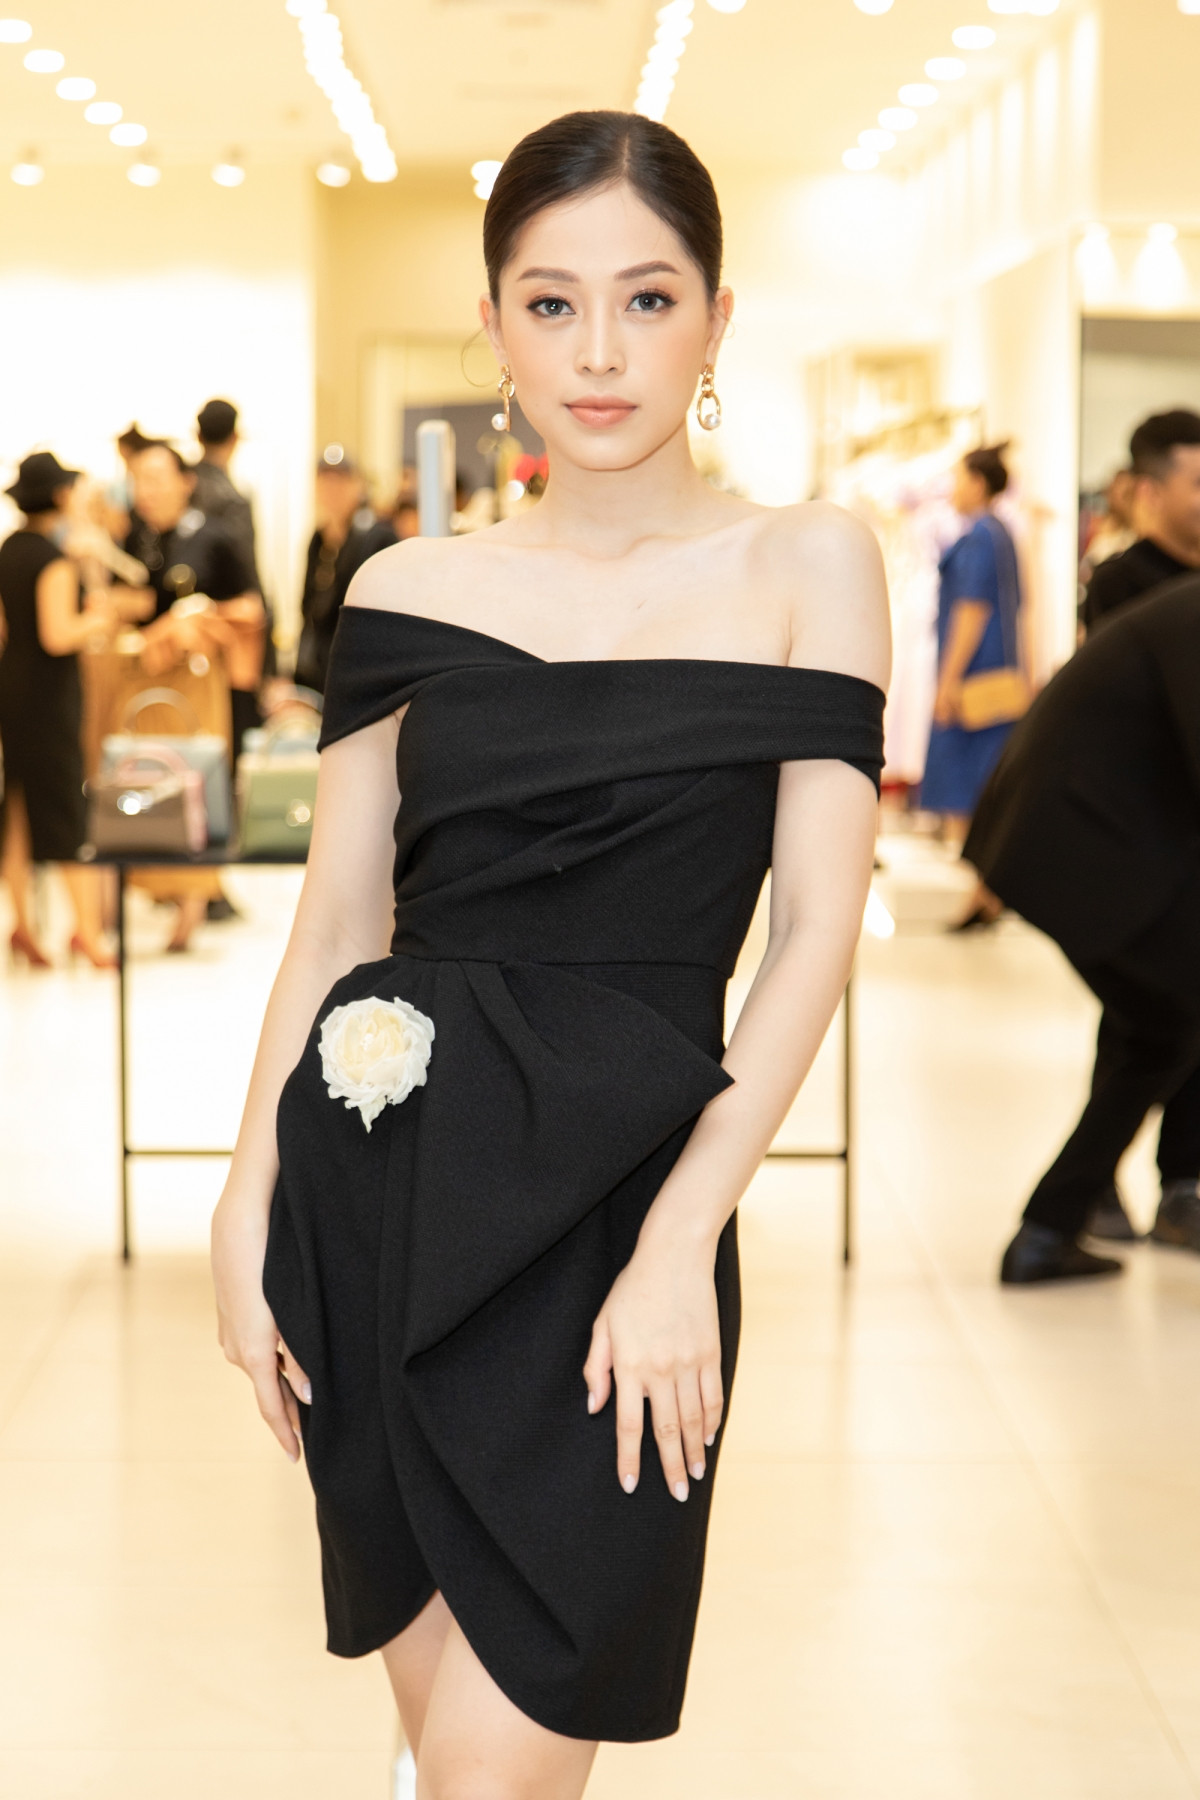 Á hậu Việt Nam 2018 Bùi Phương Nga chọn diện thiết kế màu đen với những đường gấp nếp tạo phom đặc trưng, mang dấu ấn đậm nét của Đỗ Mạnh Cường.